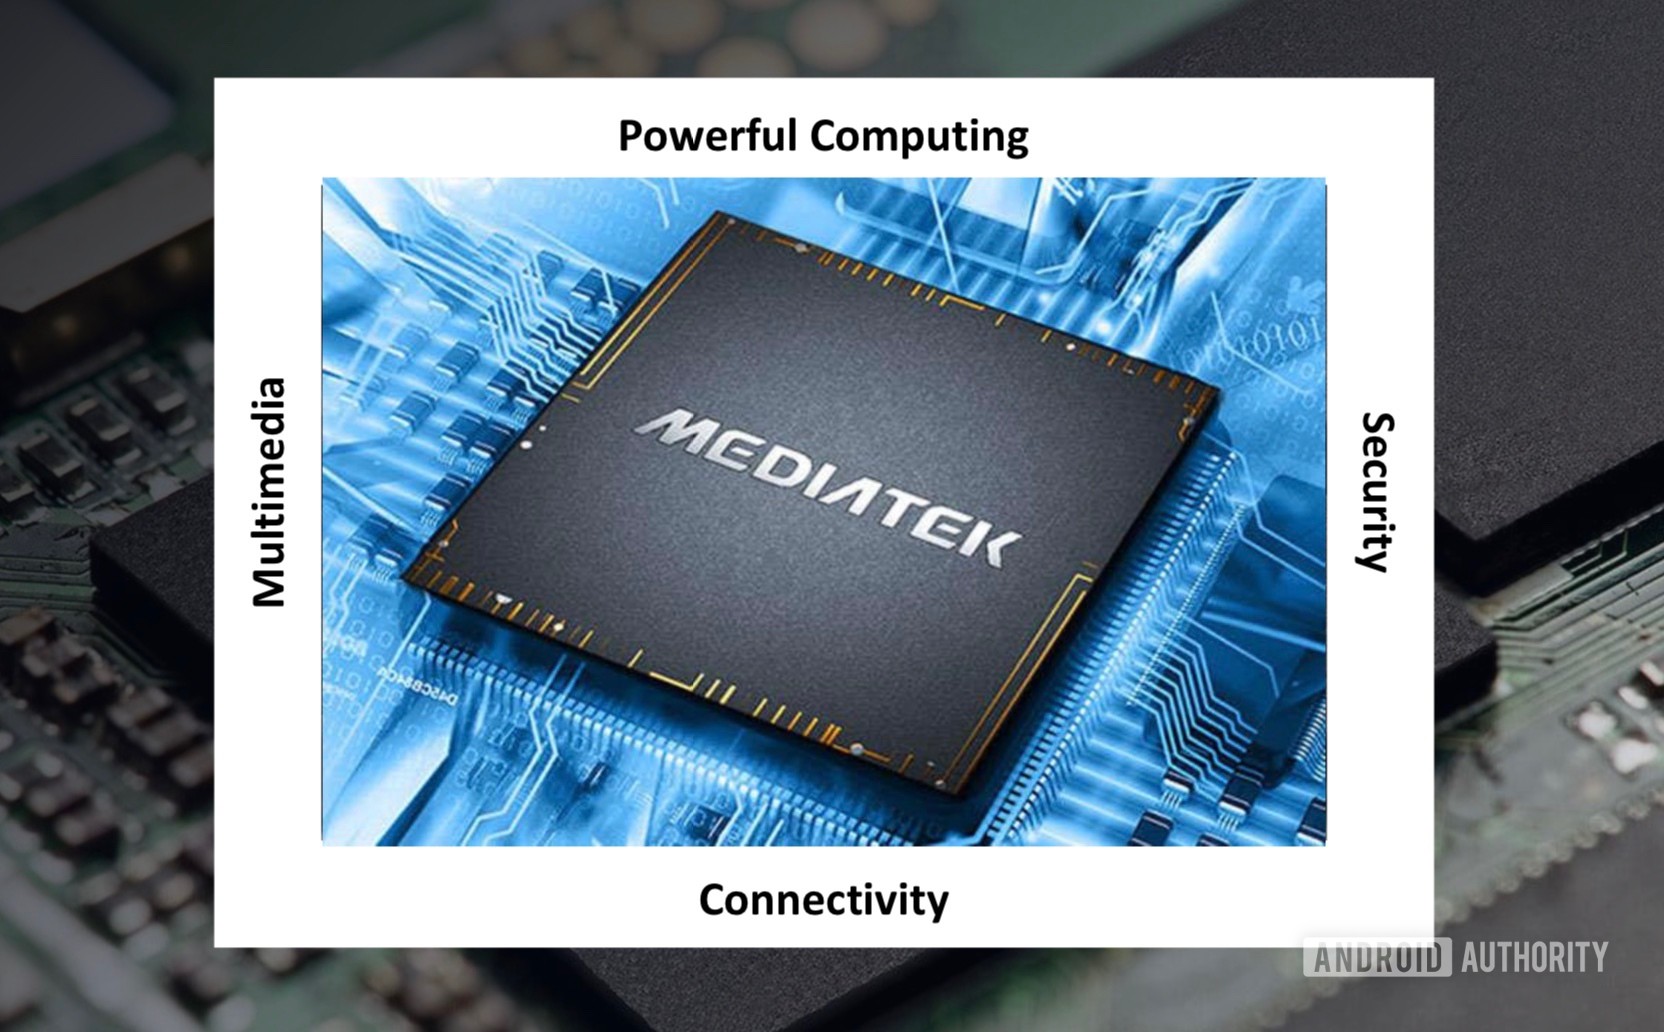 MediaTek IoT Chipset